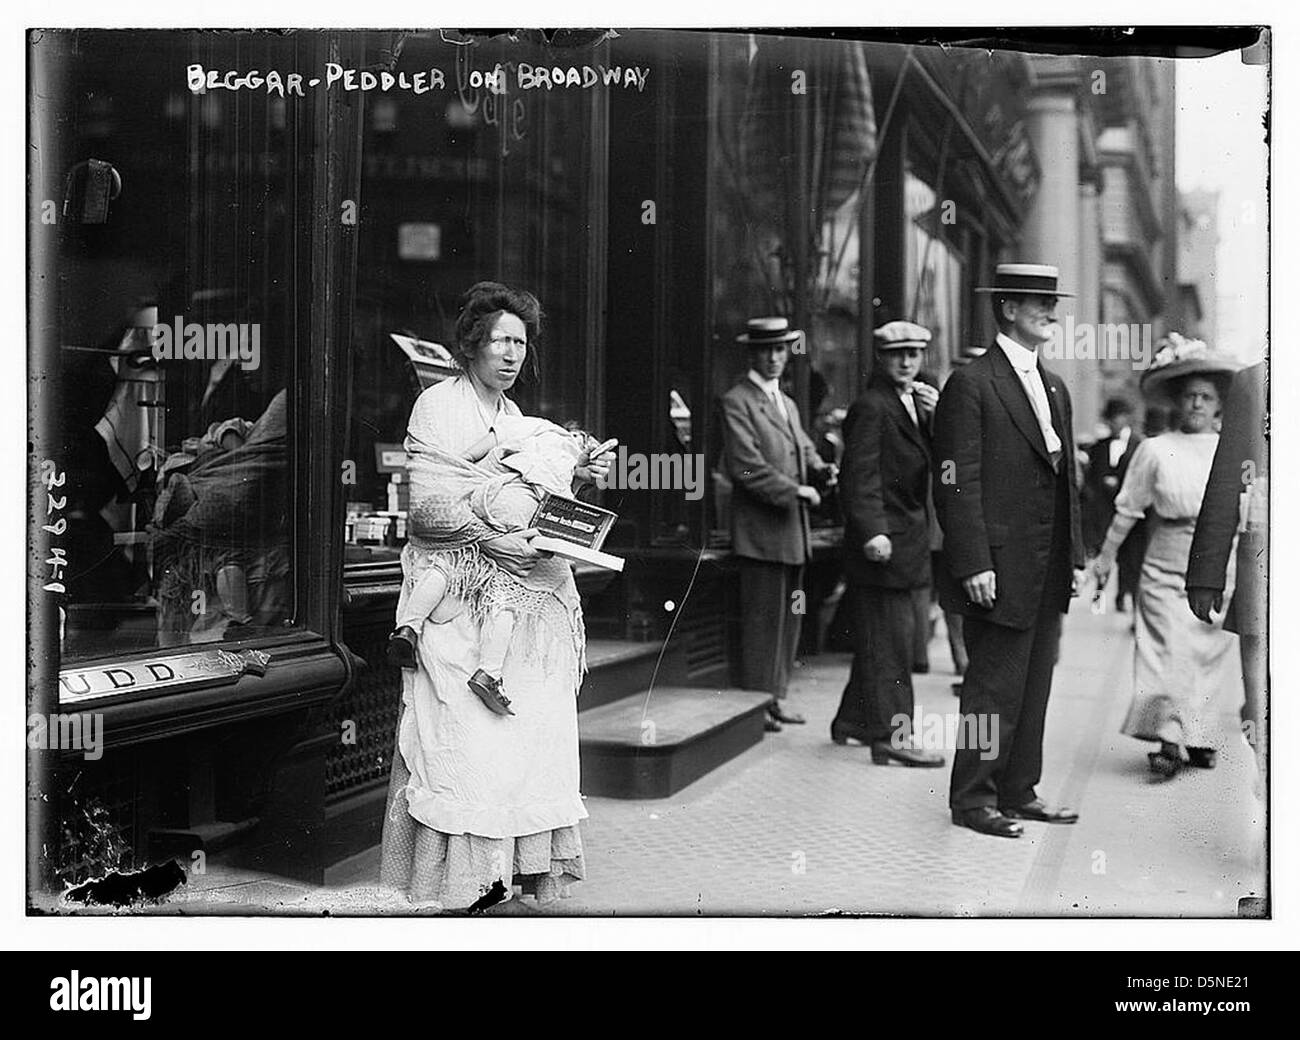 Mendiant - colporteur sur Broadway (LOC) Banque D'Images